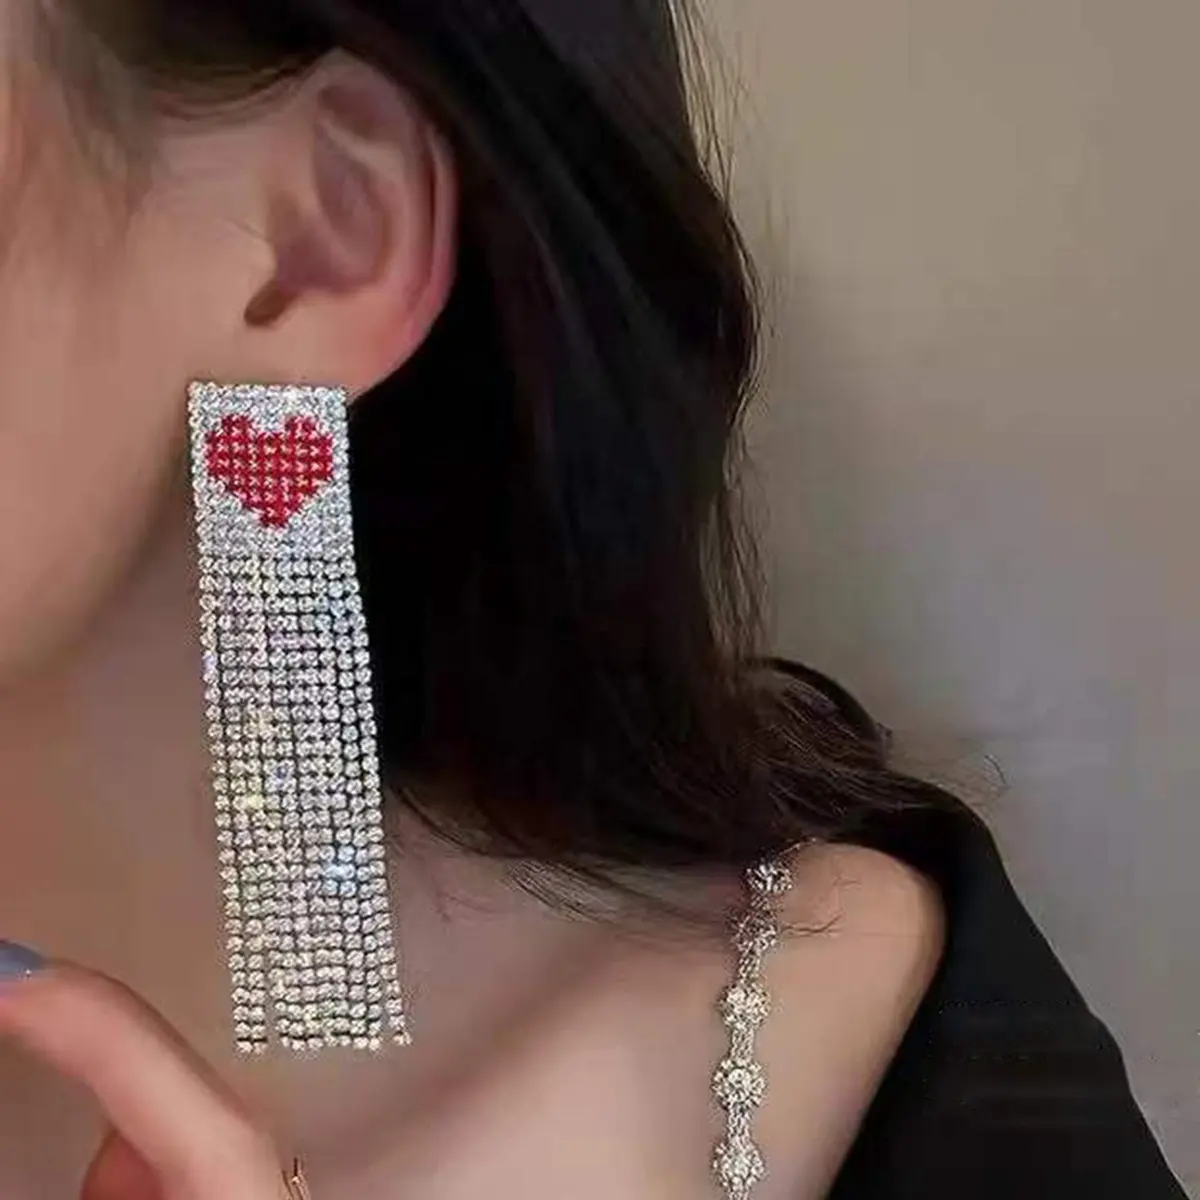 Shenglan Pink Heart Tassel Earrings Long Bohemian Fringe Chain Crystal Earrings Chandelier Dangle Drop Earrings for Women Girls